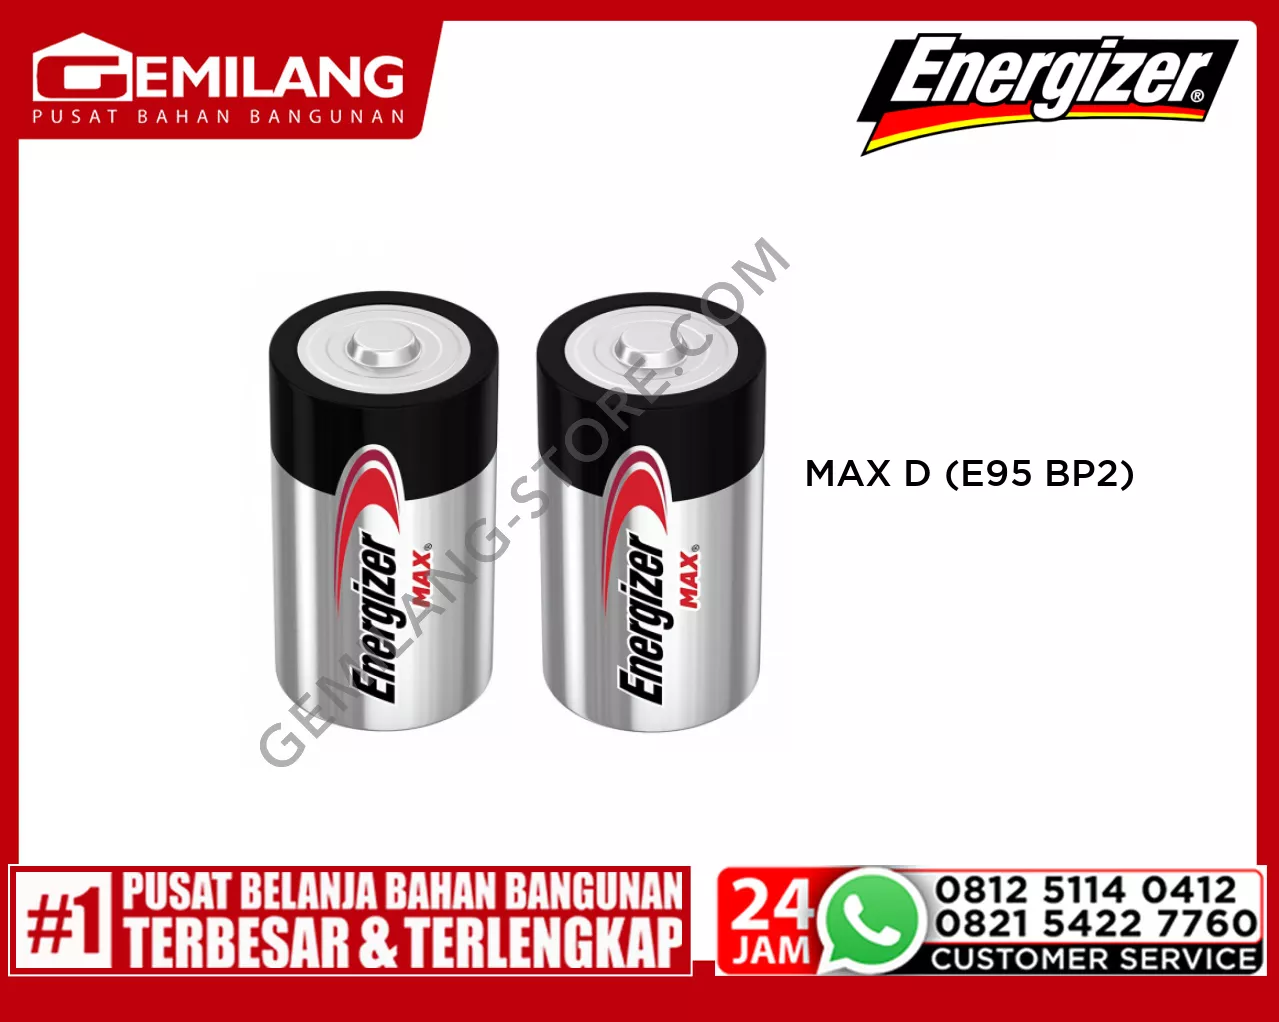 ENERGIZER MAX D (E95 BP-2)